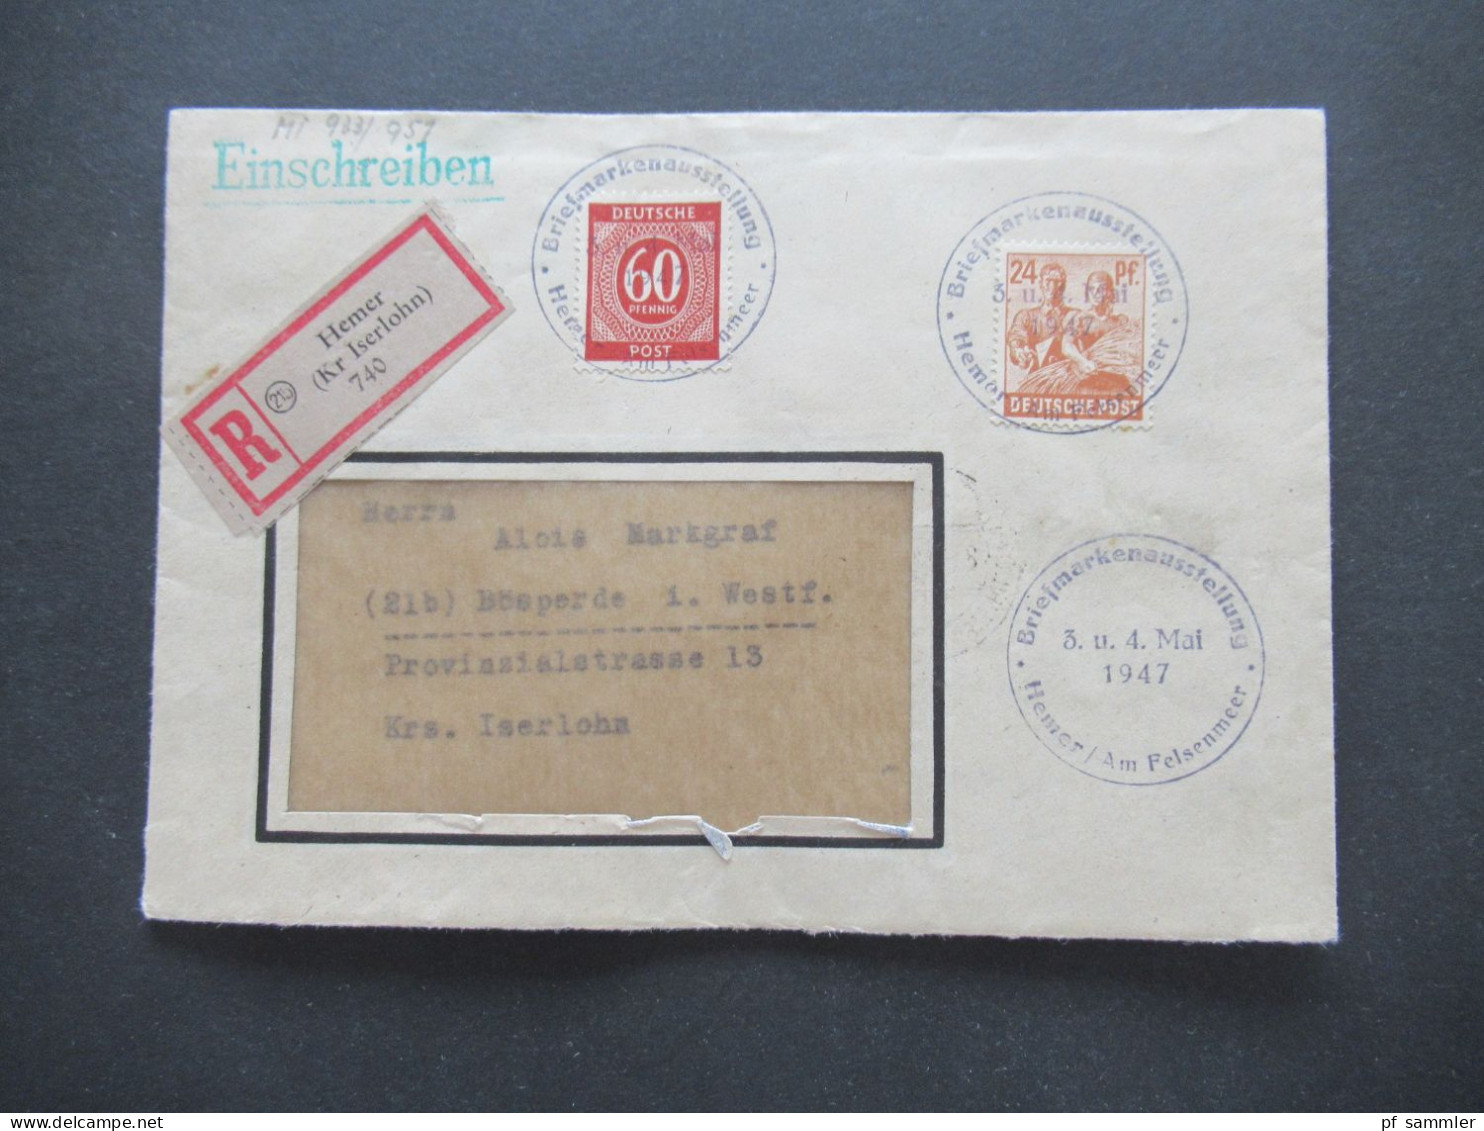 Kontrollrat 1947 MiF Einschreiben Hemer (Kr Iserlohn) Mit Sonderstempel K1 Briefmarkenausstellung Hemer Am Felsenmeer - Briefe U. Dokumente